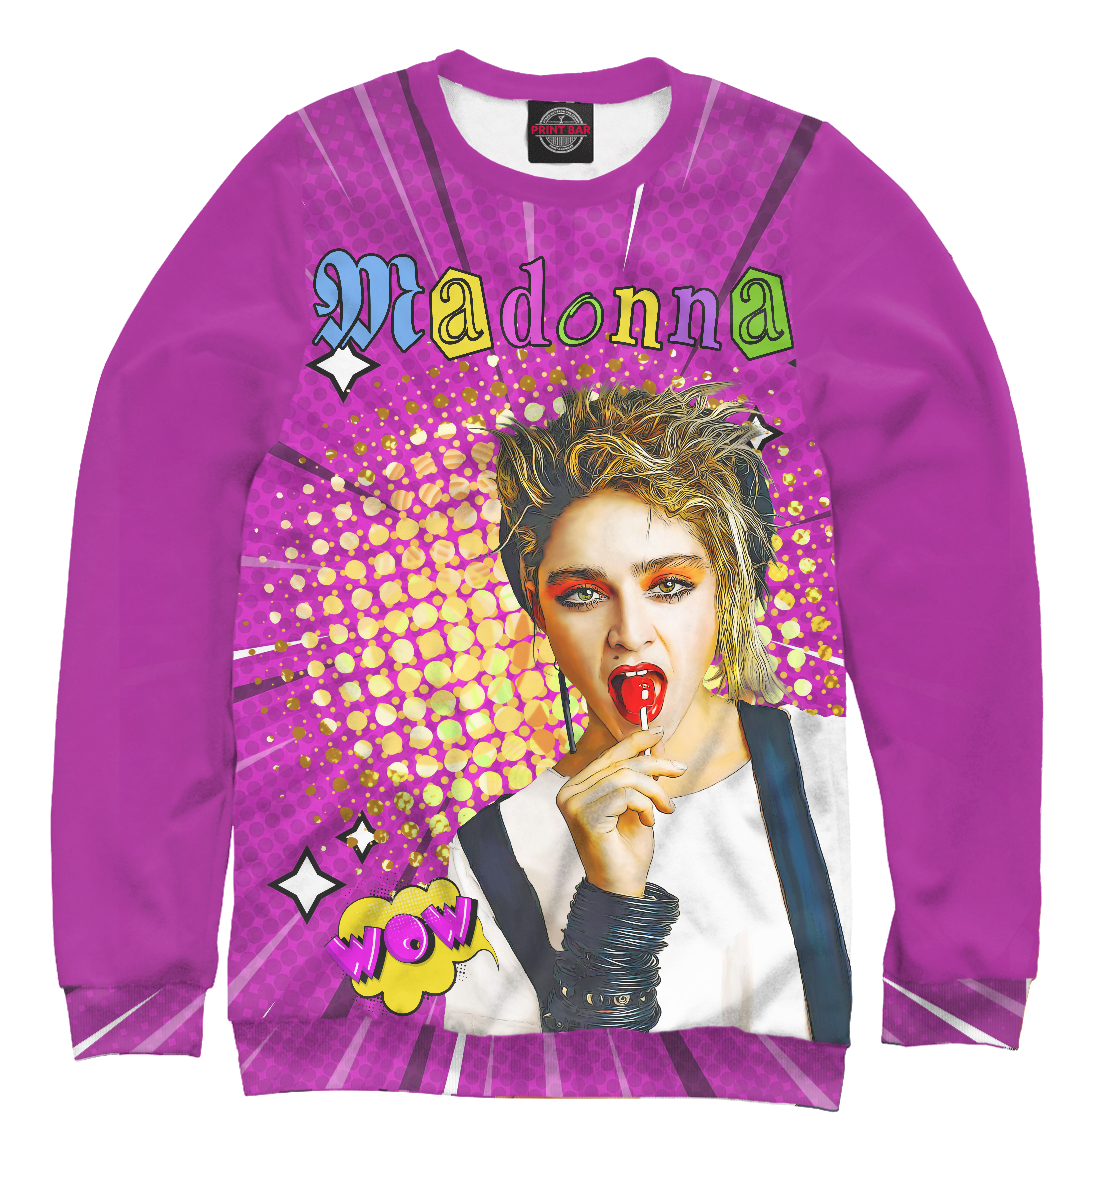 

Madonna 80s Pop Art